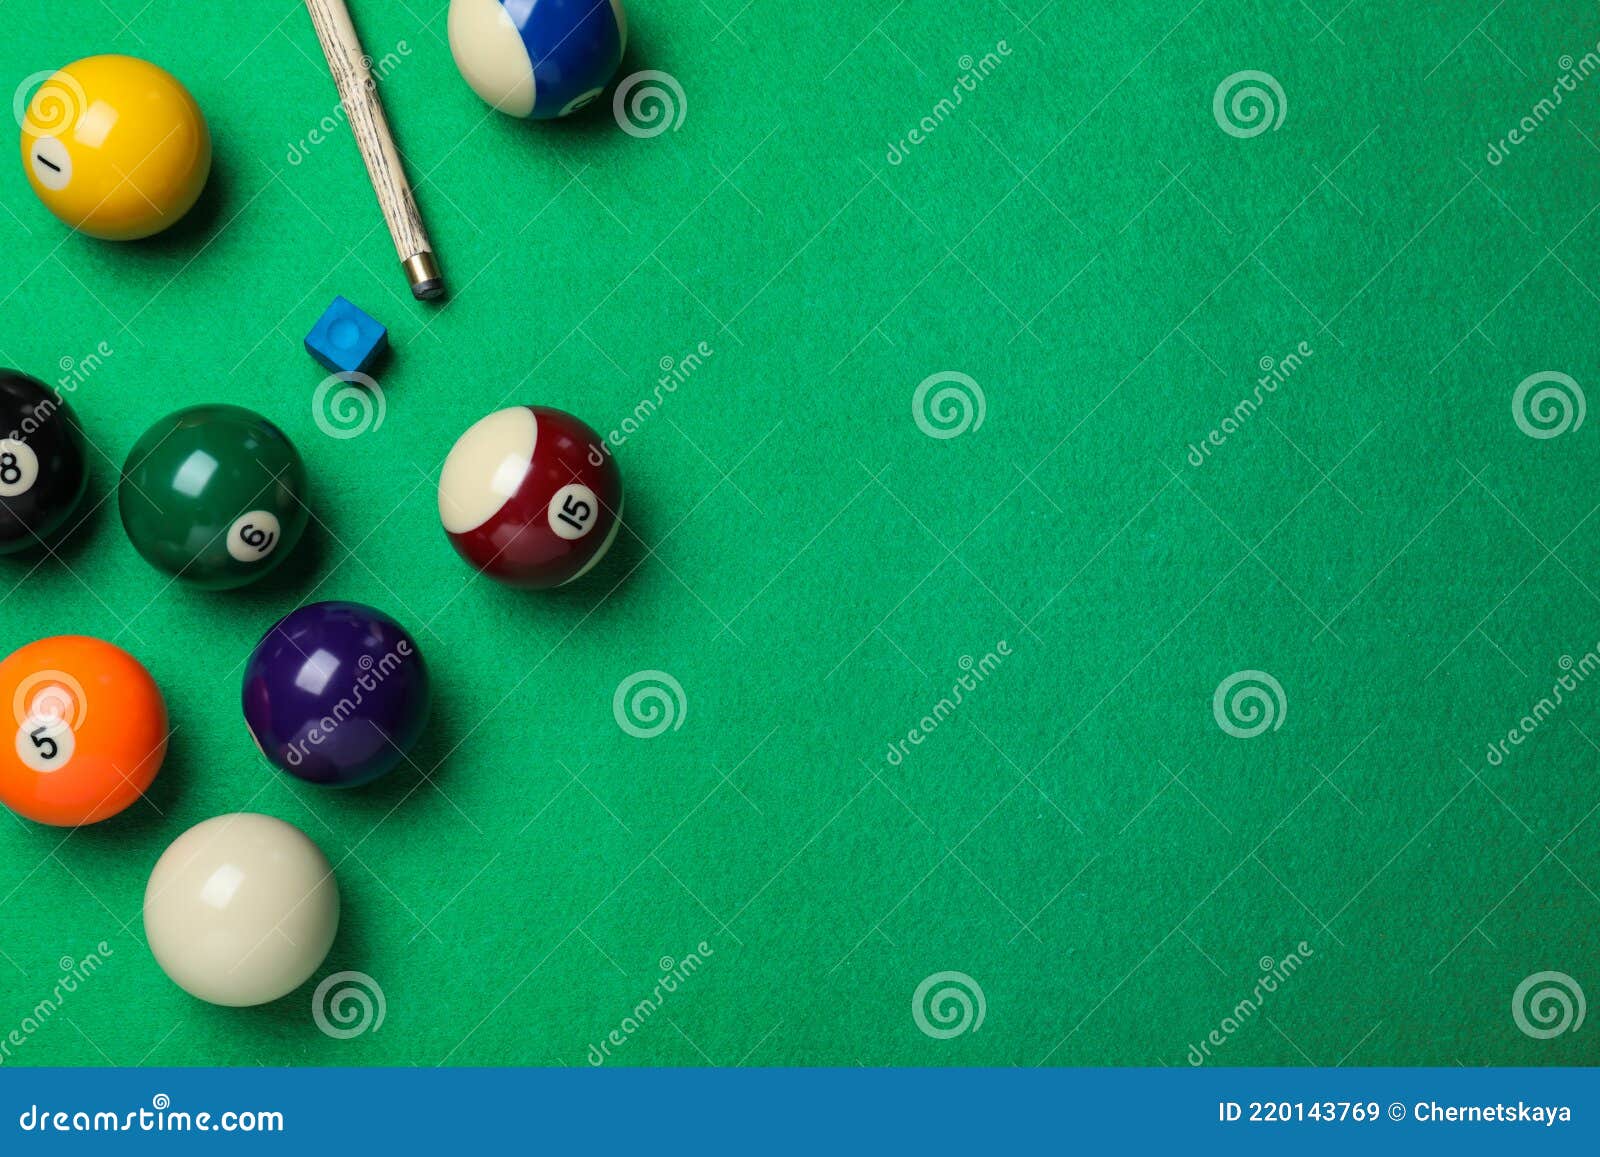 Homem segurando o braço na mesa de bilhar, jogando sinuca ou se preparando  com o objetivo de atirar bolas de bilhar. jogo de esporte sinuca bilhar